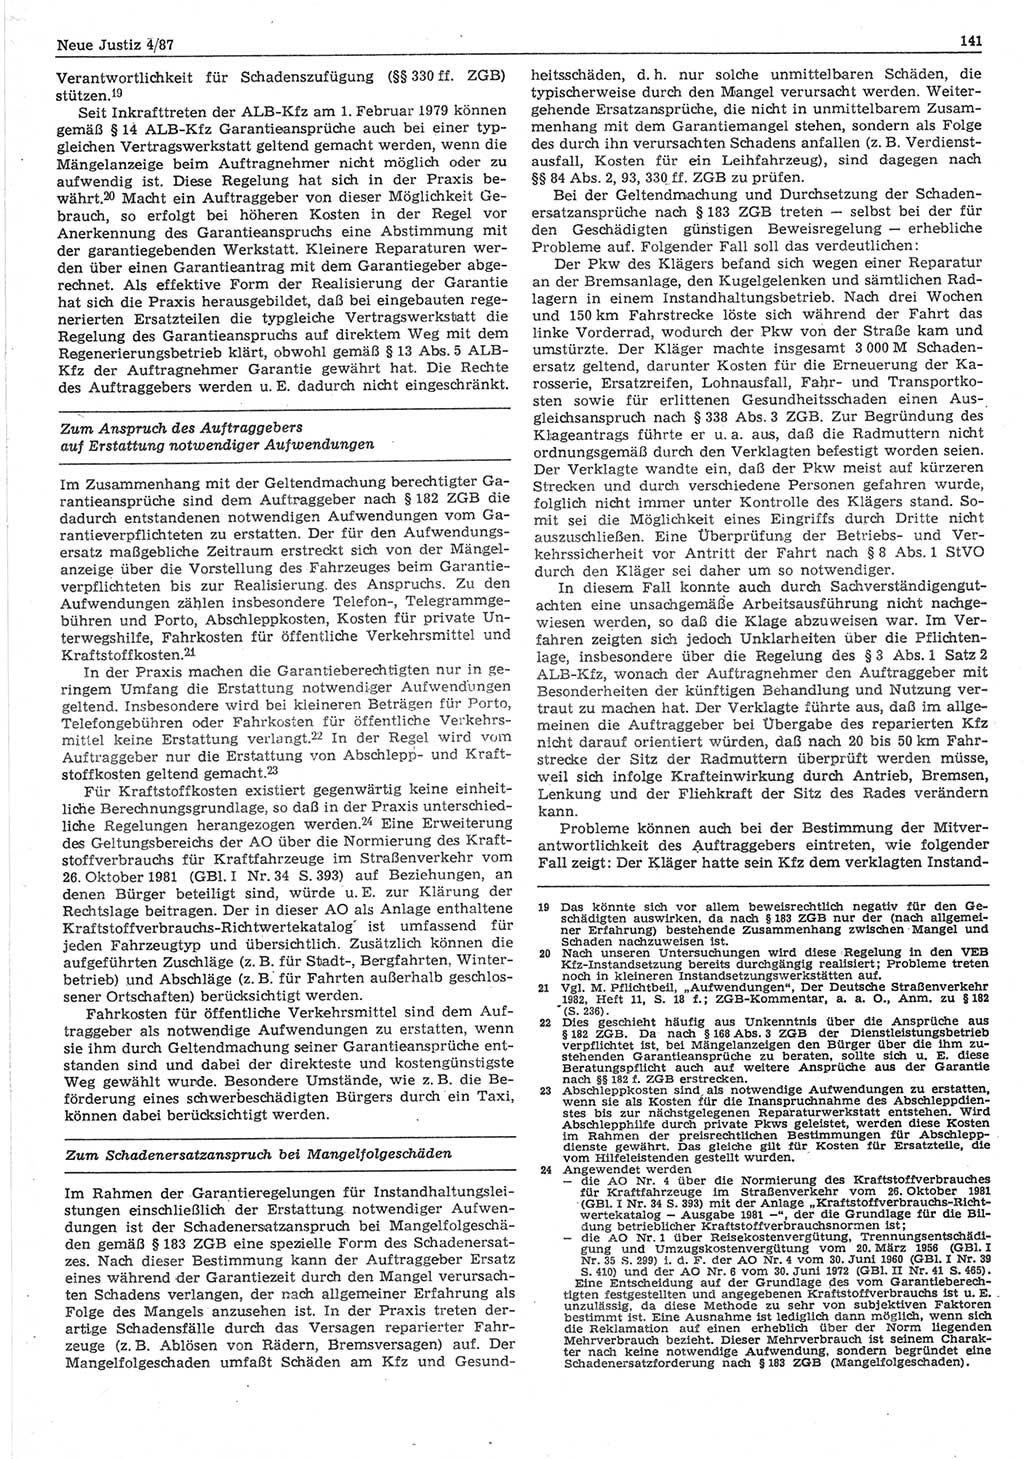 Neue Justiz (NJ), Zeitschrift für sozialistisches Recht und Gesetzlichkeit [Deutsche Demokratische Republik (DDR)], 41. Jahrgang 1987, Seite 141 (NJ DDR 1987, S. 141)